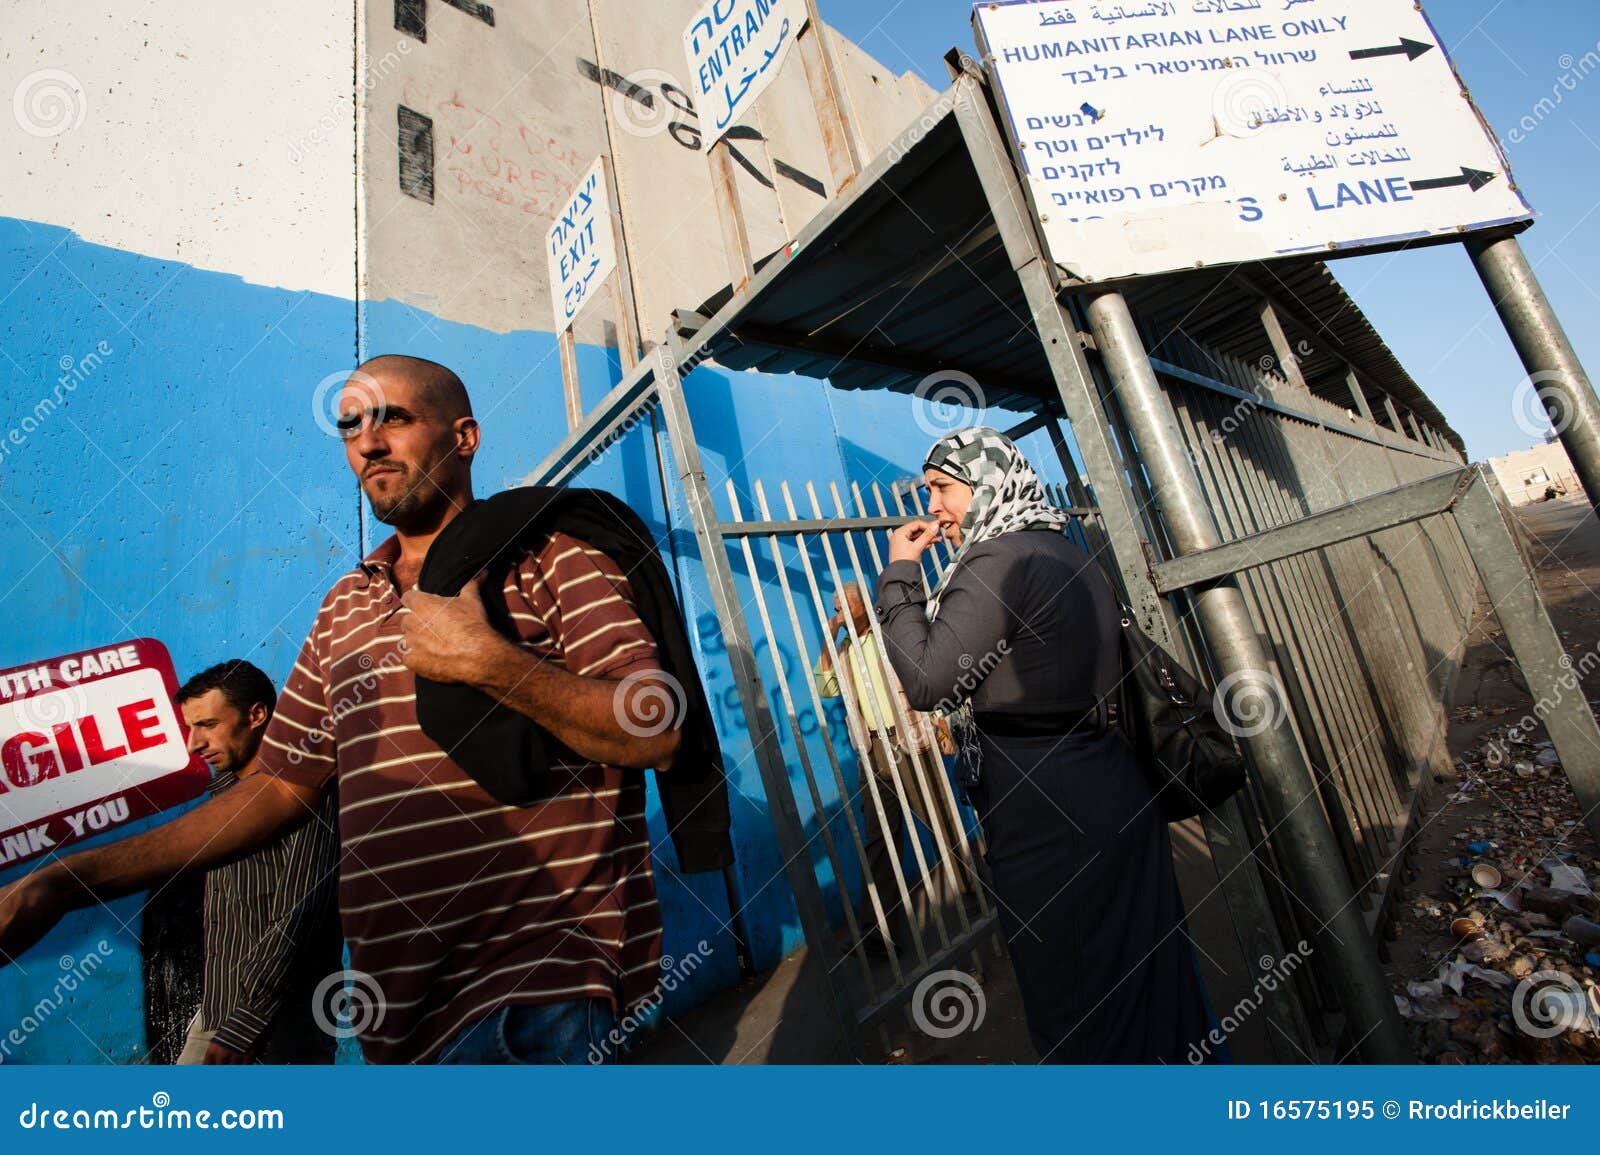 BETHLEHEM, TERRITORIOS PALESTINOS OCUPADOS - 14 DE OCTUBRE: Paso de los peatones a través de una terminal israelí del punto de verificación en la pared de la separación en Bethlehem el 14 de octubre de 2010.